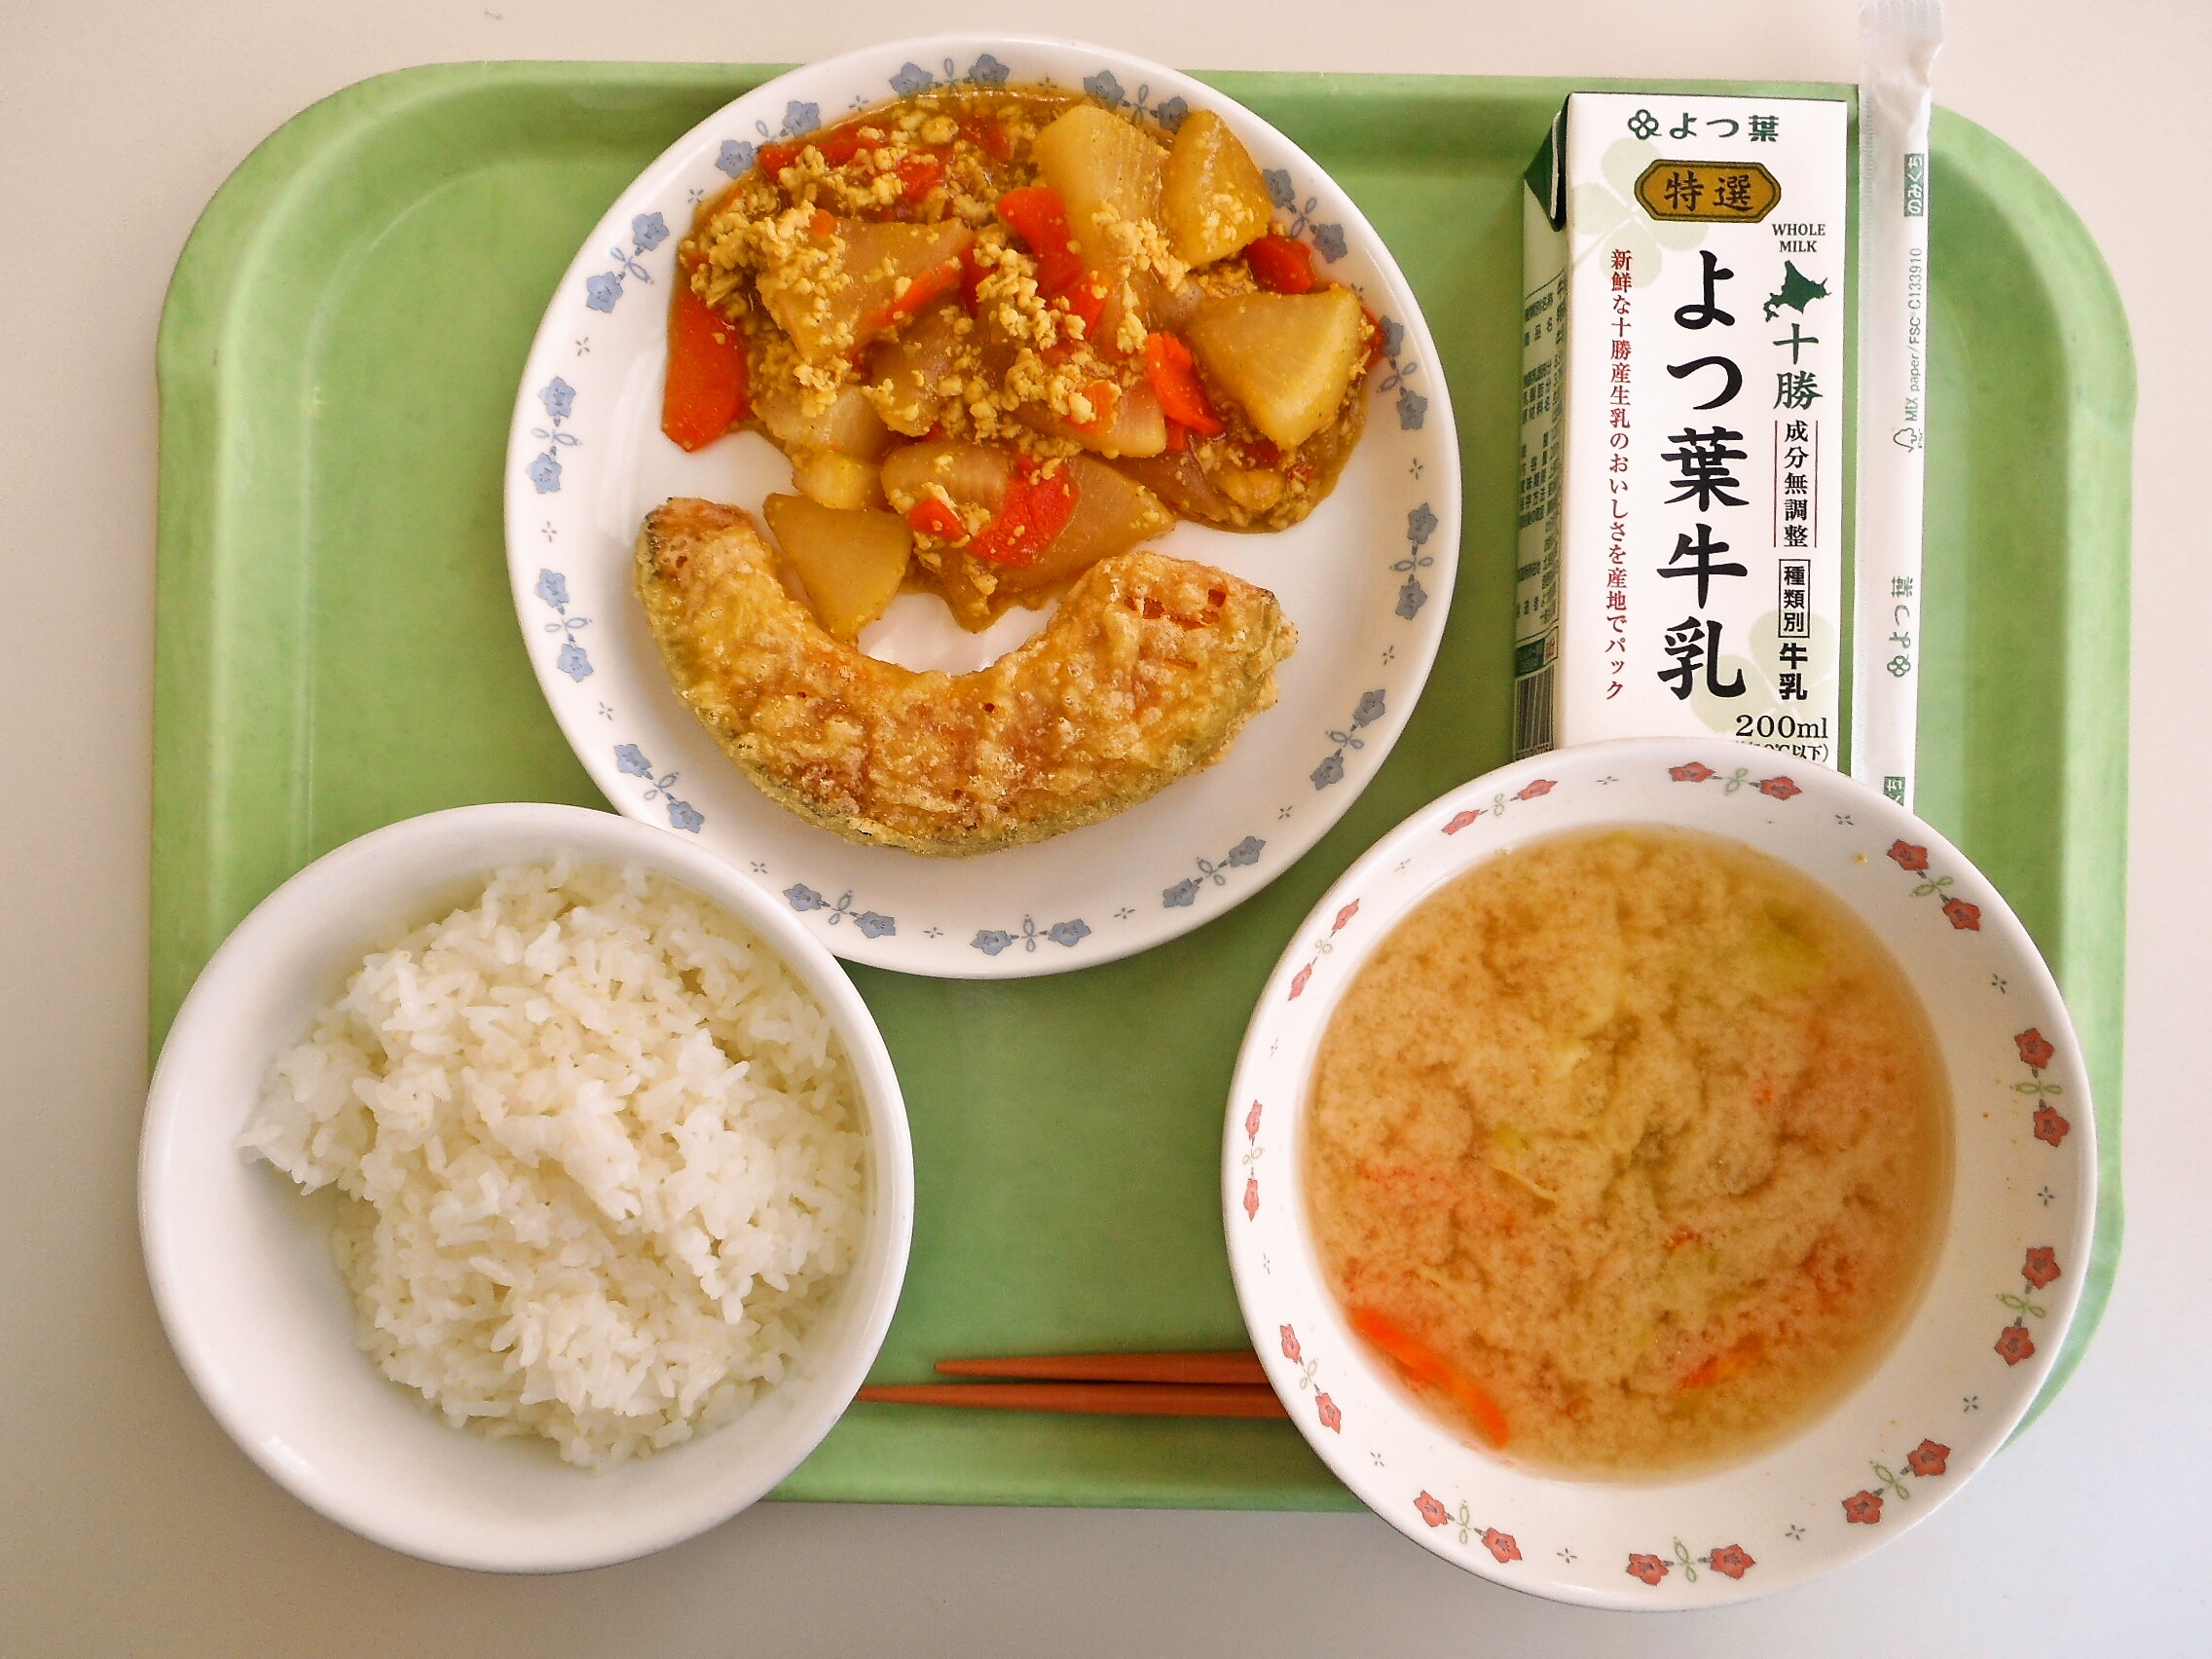 ごはん、みそ汁（キャベツ・人参）、かぼちゃ天ぷら、大根のカレーそぼろ煮、牛乳